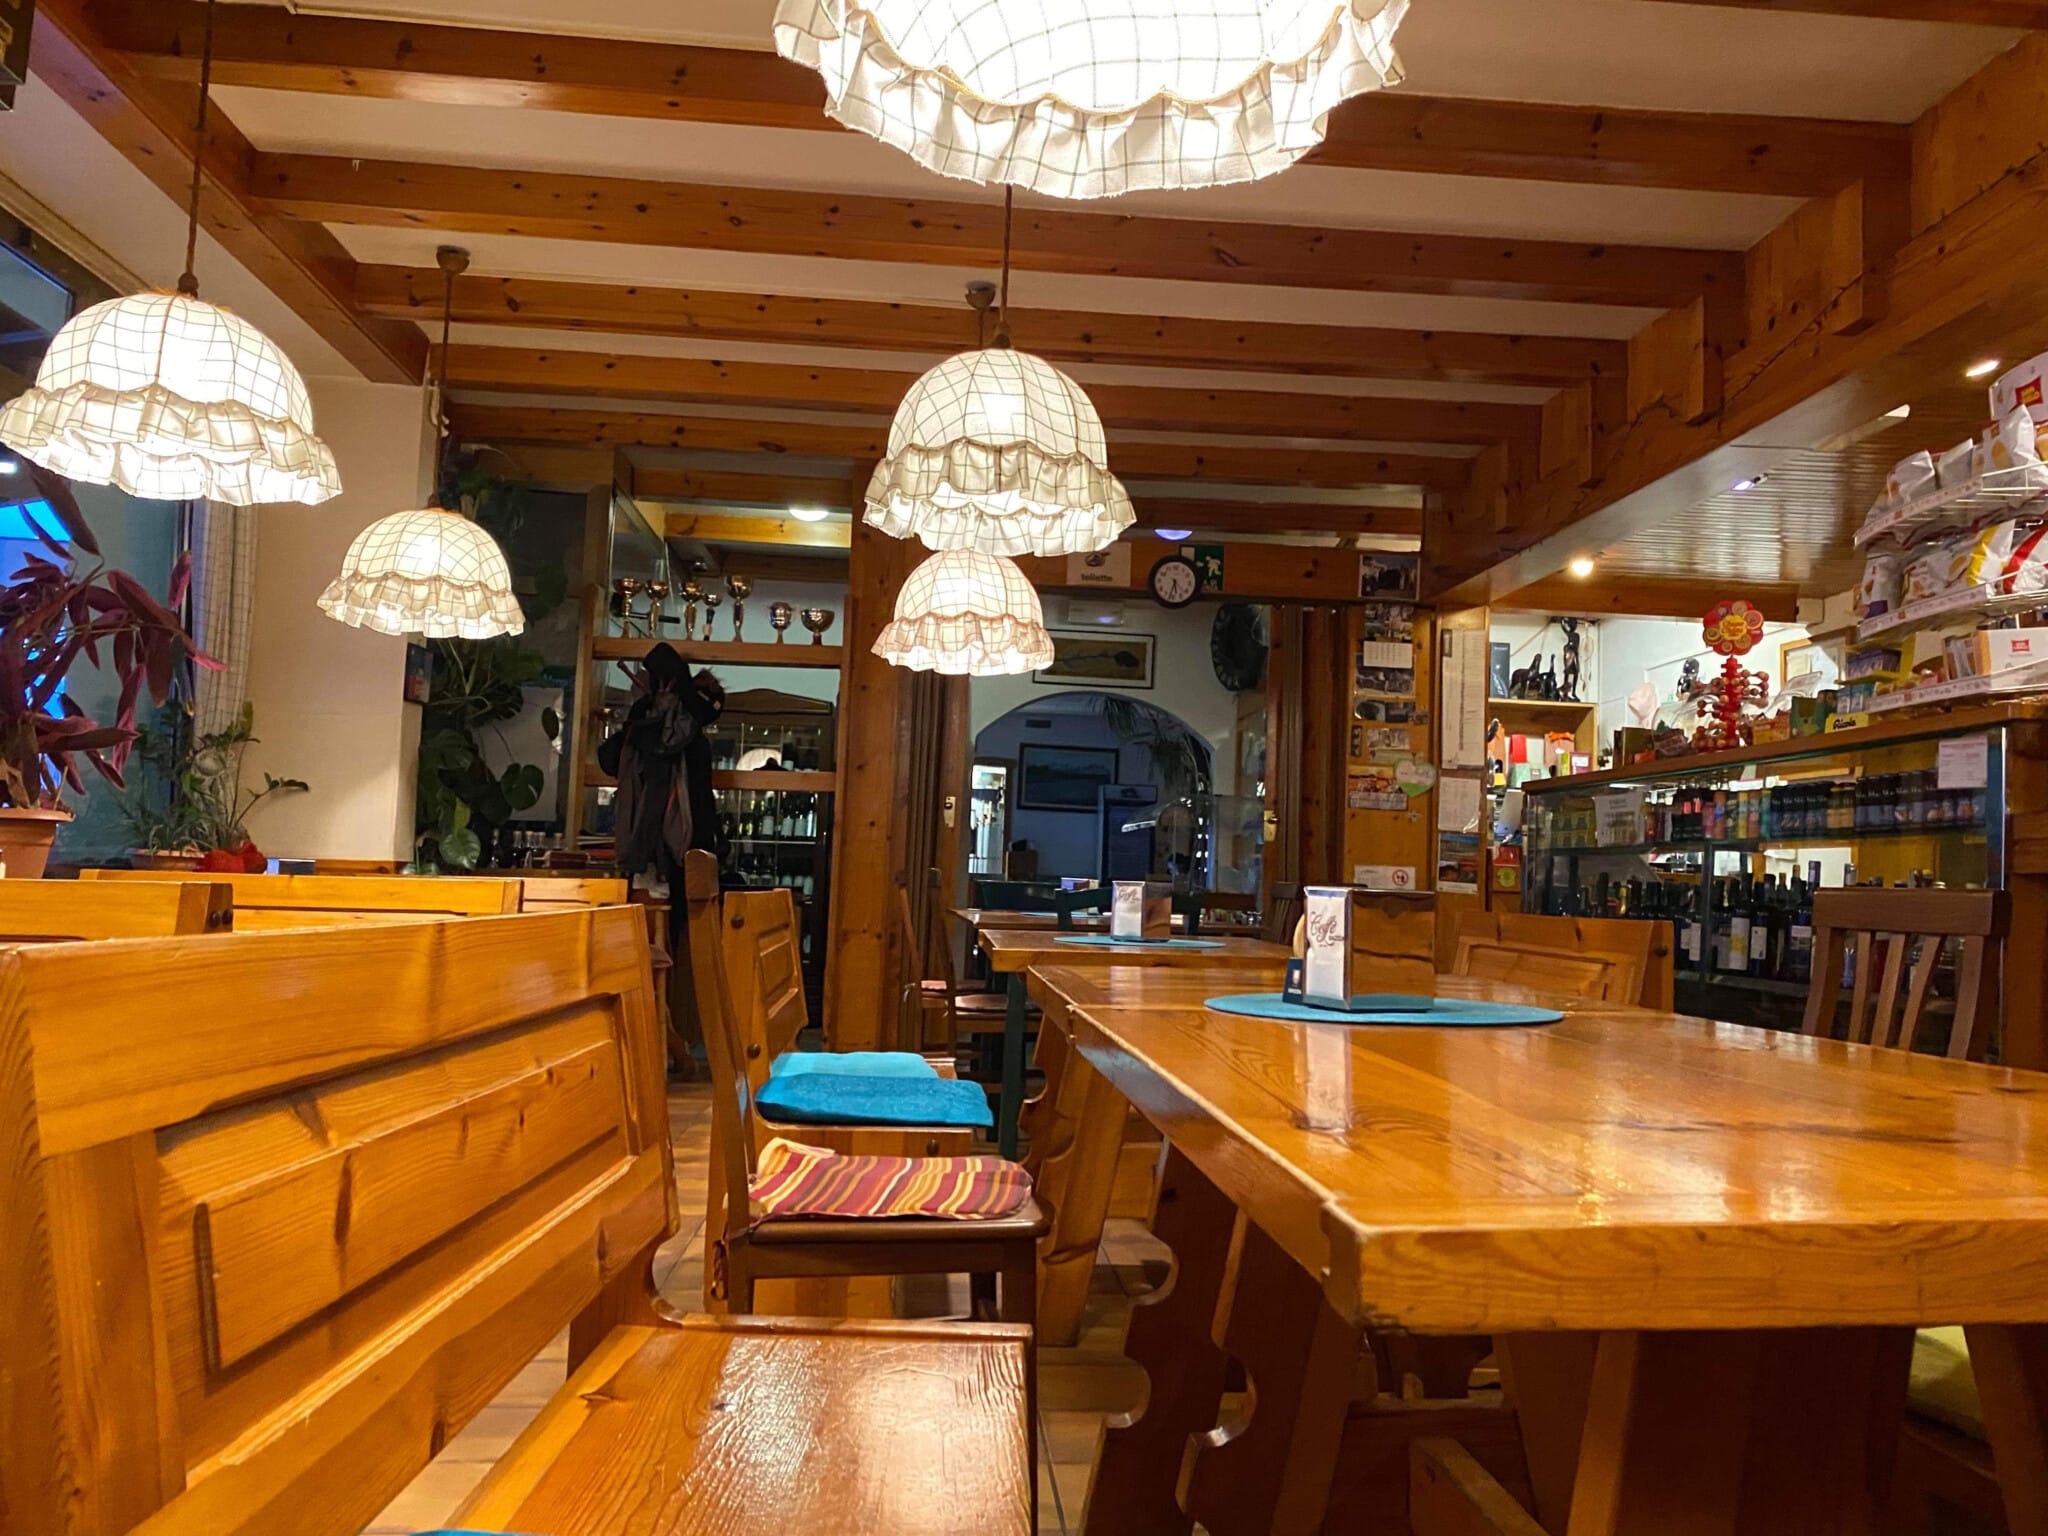 Normalerweise ist die Pizzeria in Tarvis immer gut besucht, in den letzten Tagen war das Lokal völlig menschenleer.